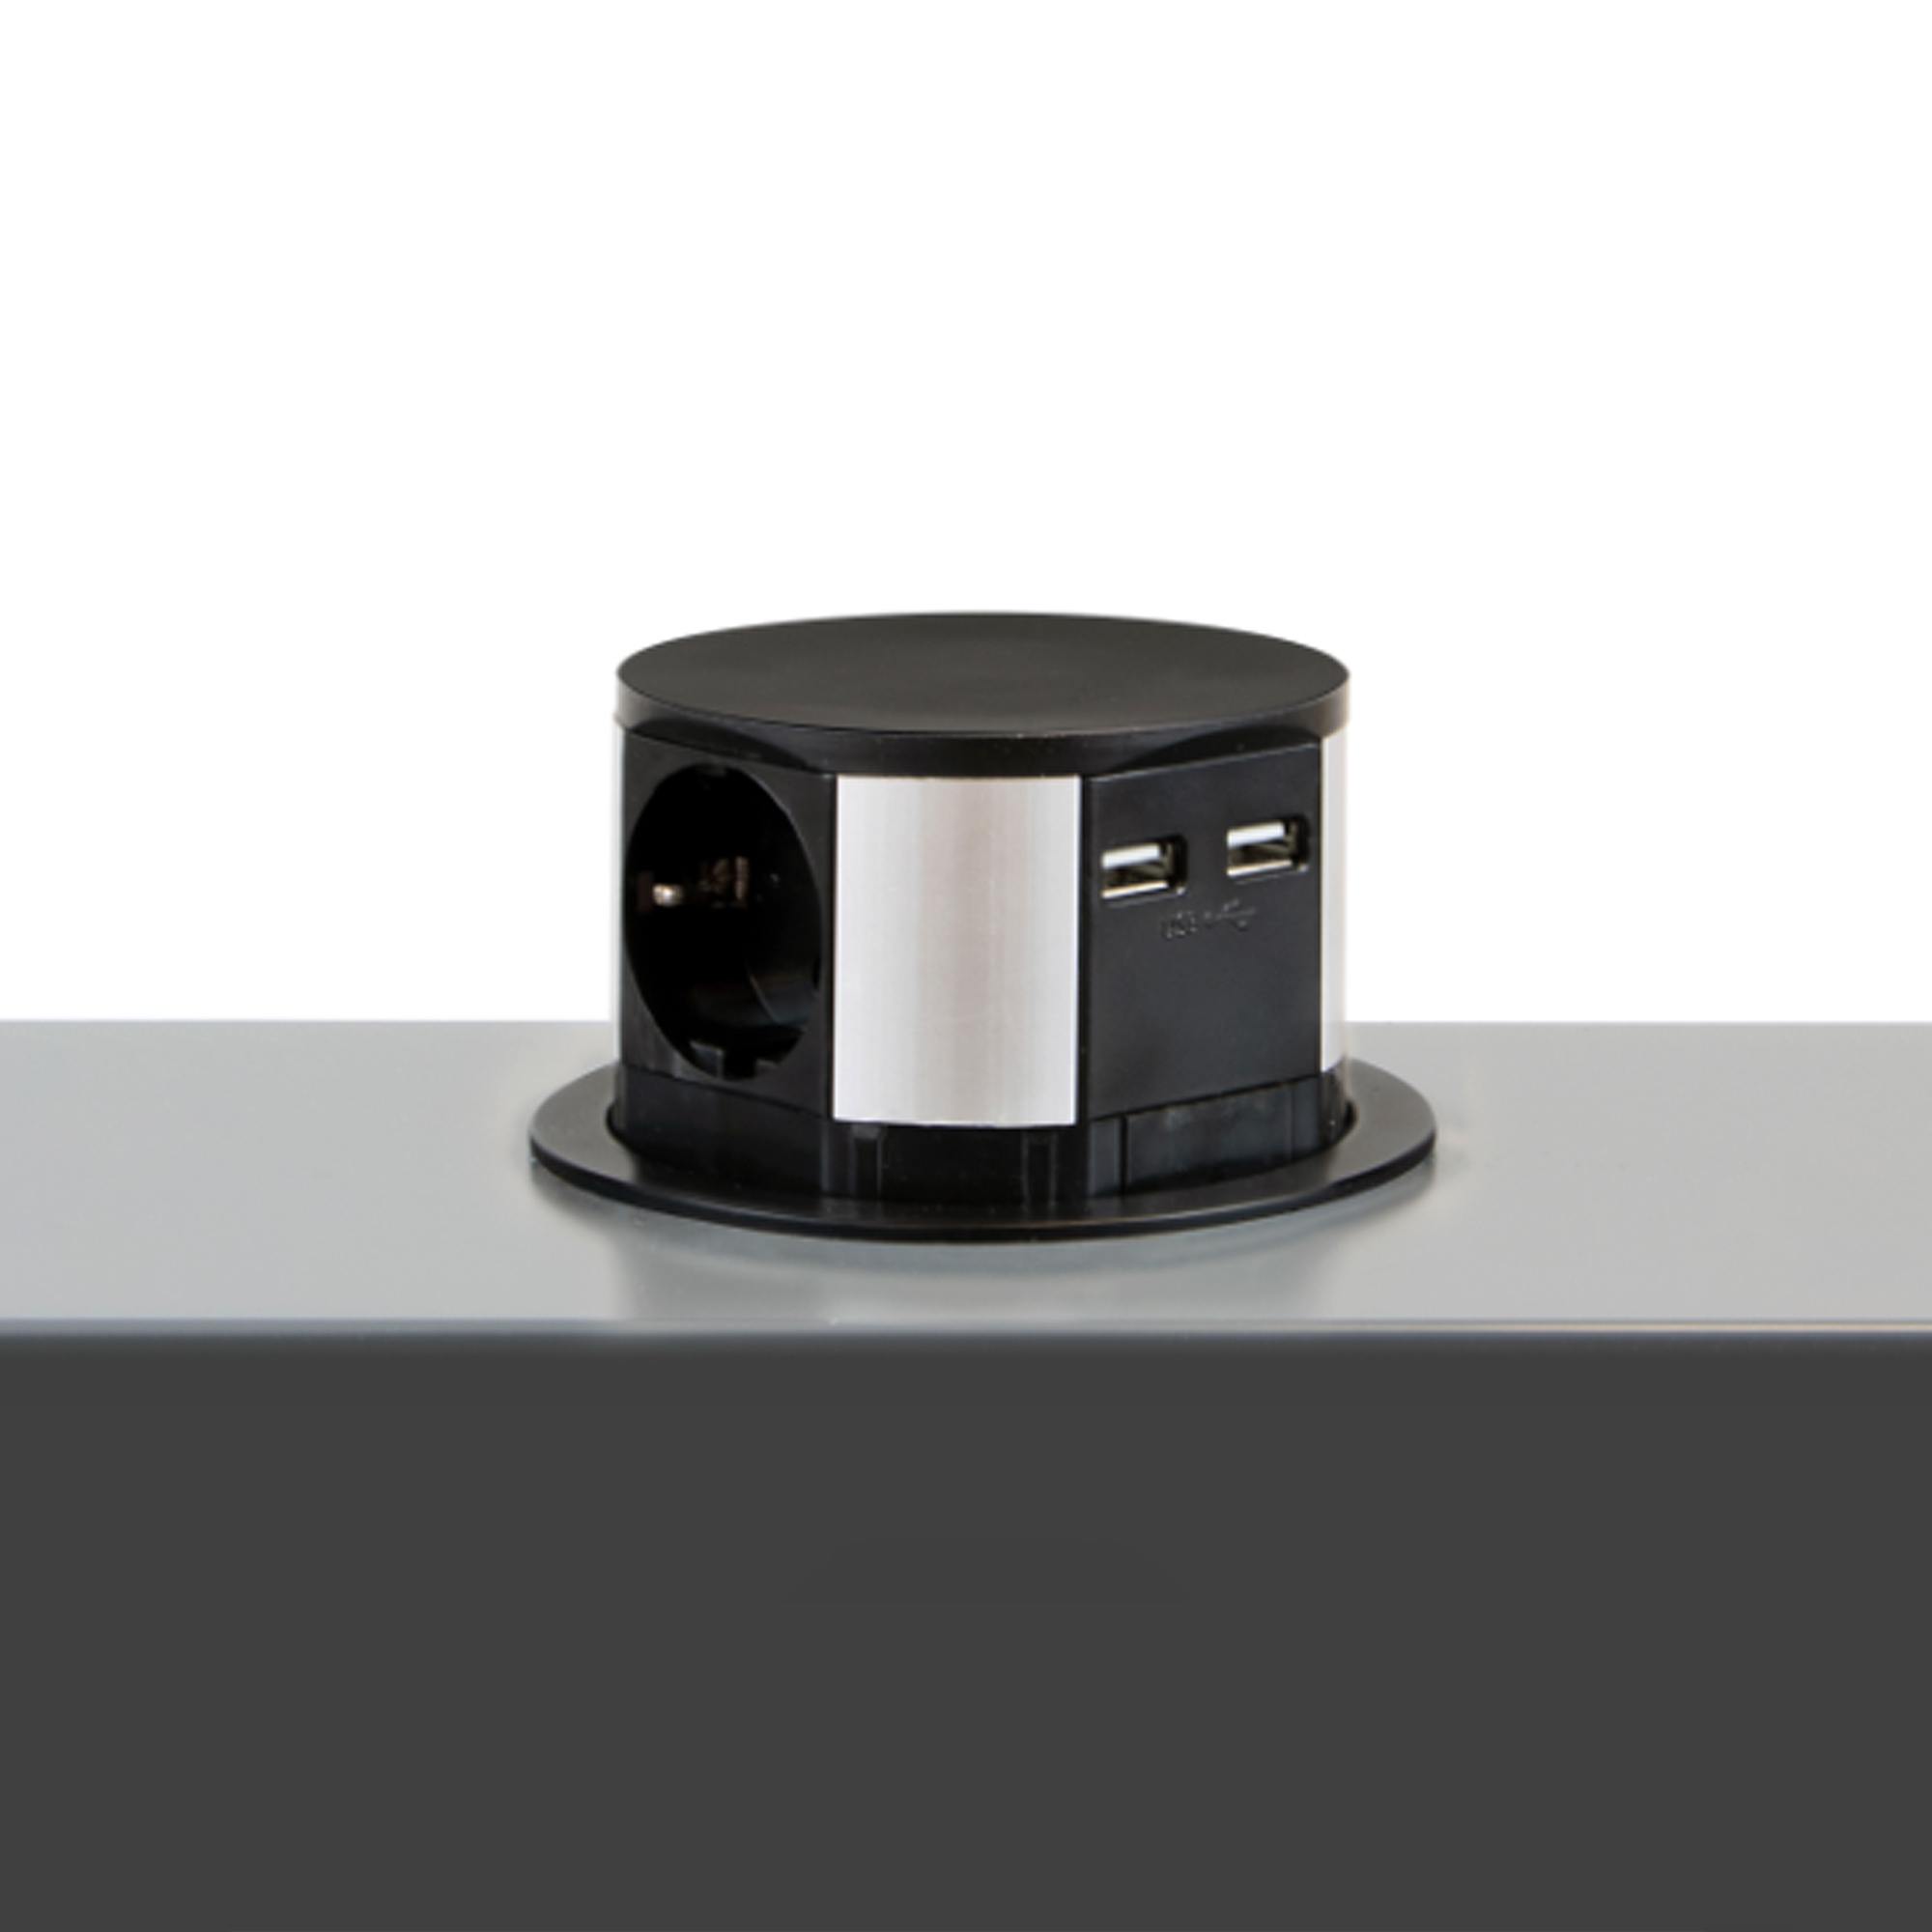  Multiconnecteur Vertikal Push diametre 100mm, 3 prises de type Schuko, 2 USB type A, Acier et Plastique, Peint en noir